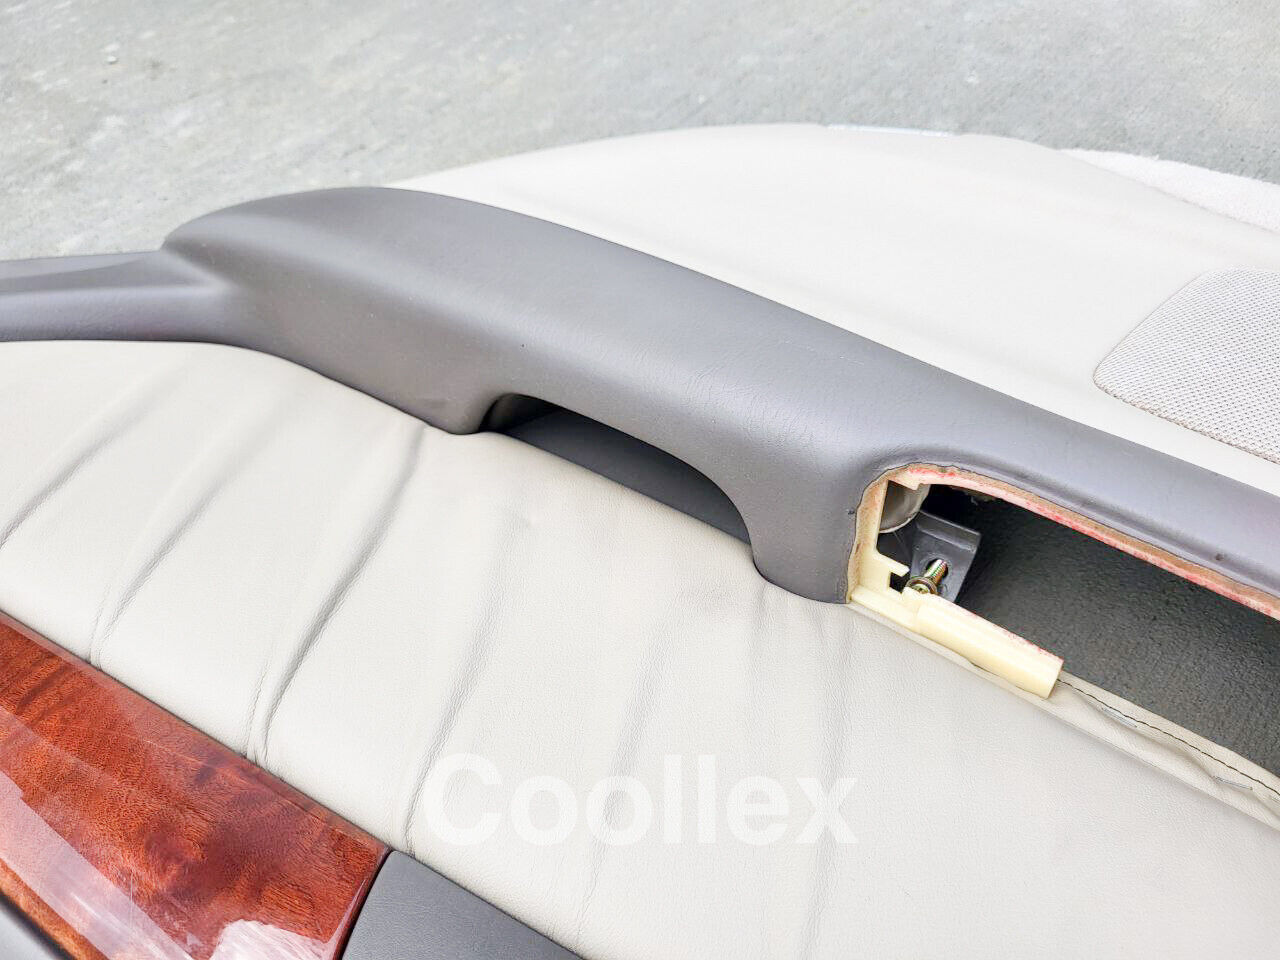 98-05 Lexus Gs300 Rear Right Door Panel 67010-30050-A0 Oem